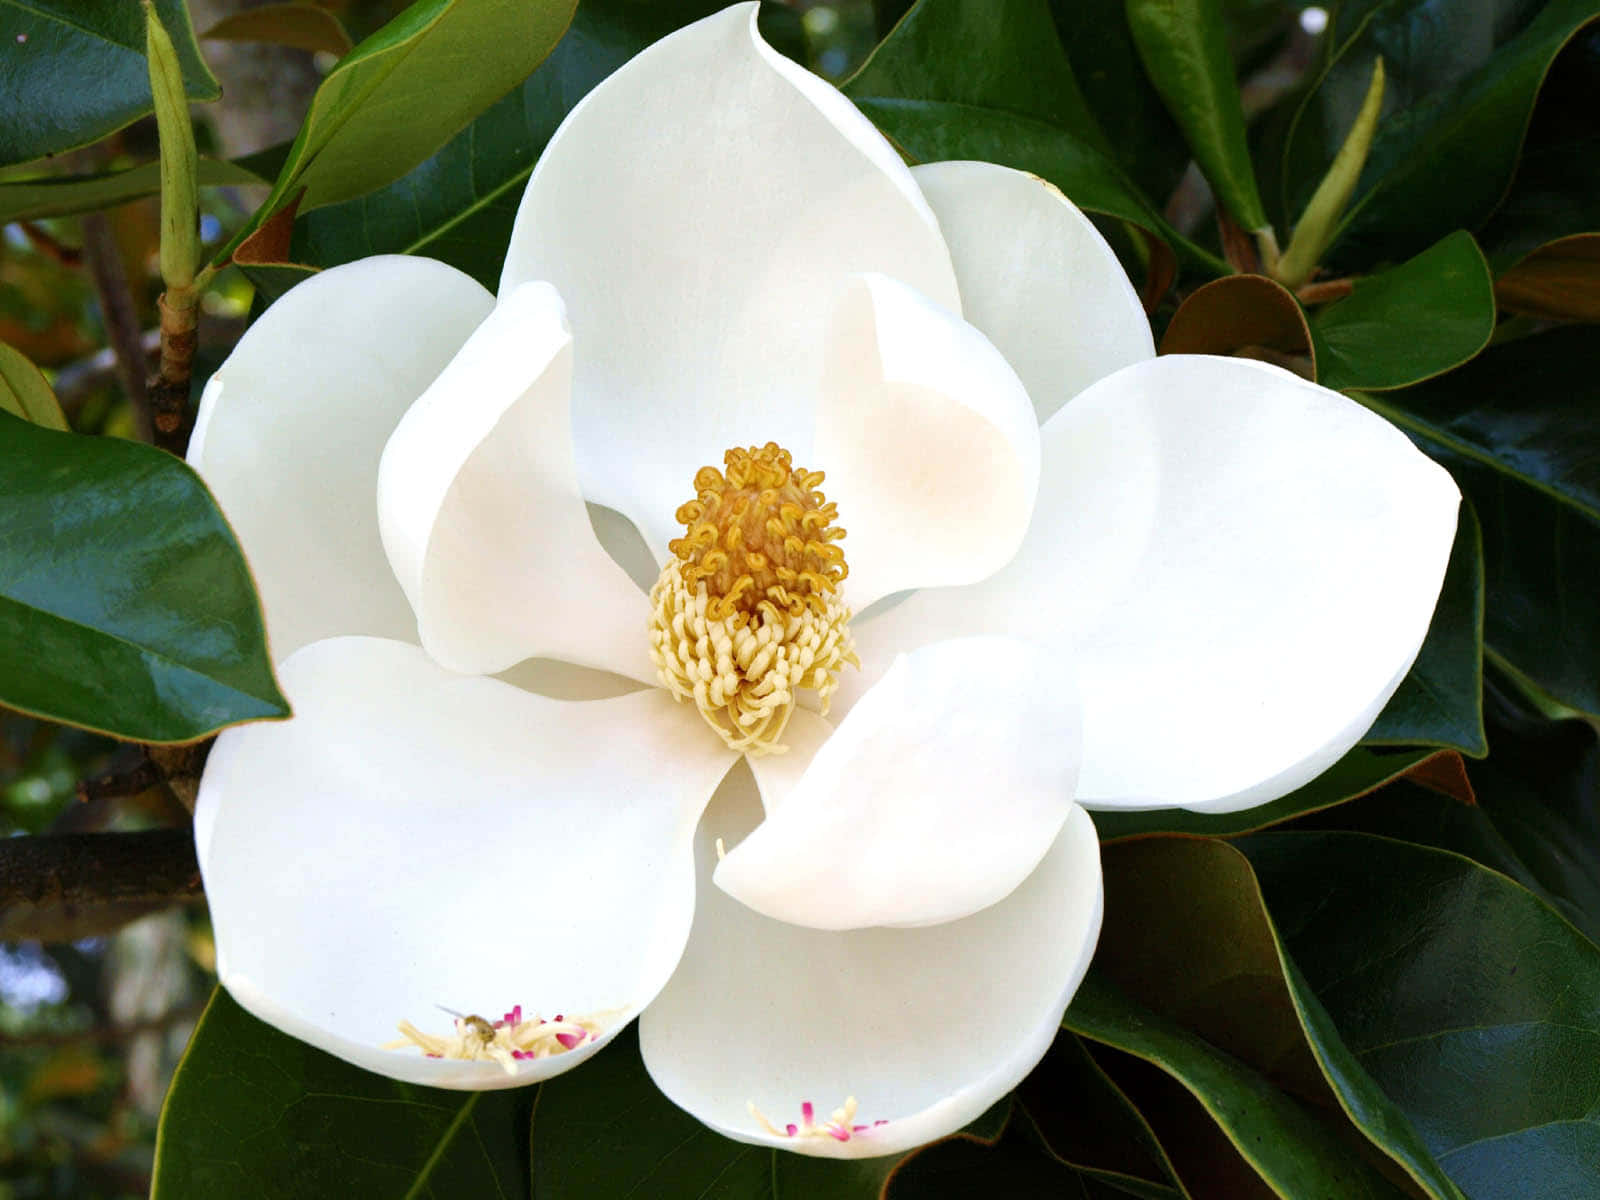 Magnolienblüten,die Widerstandsfähigkeit Und Schönheit Symbolisieren.